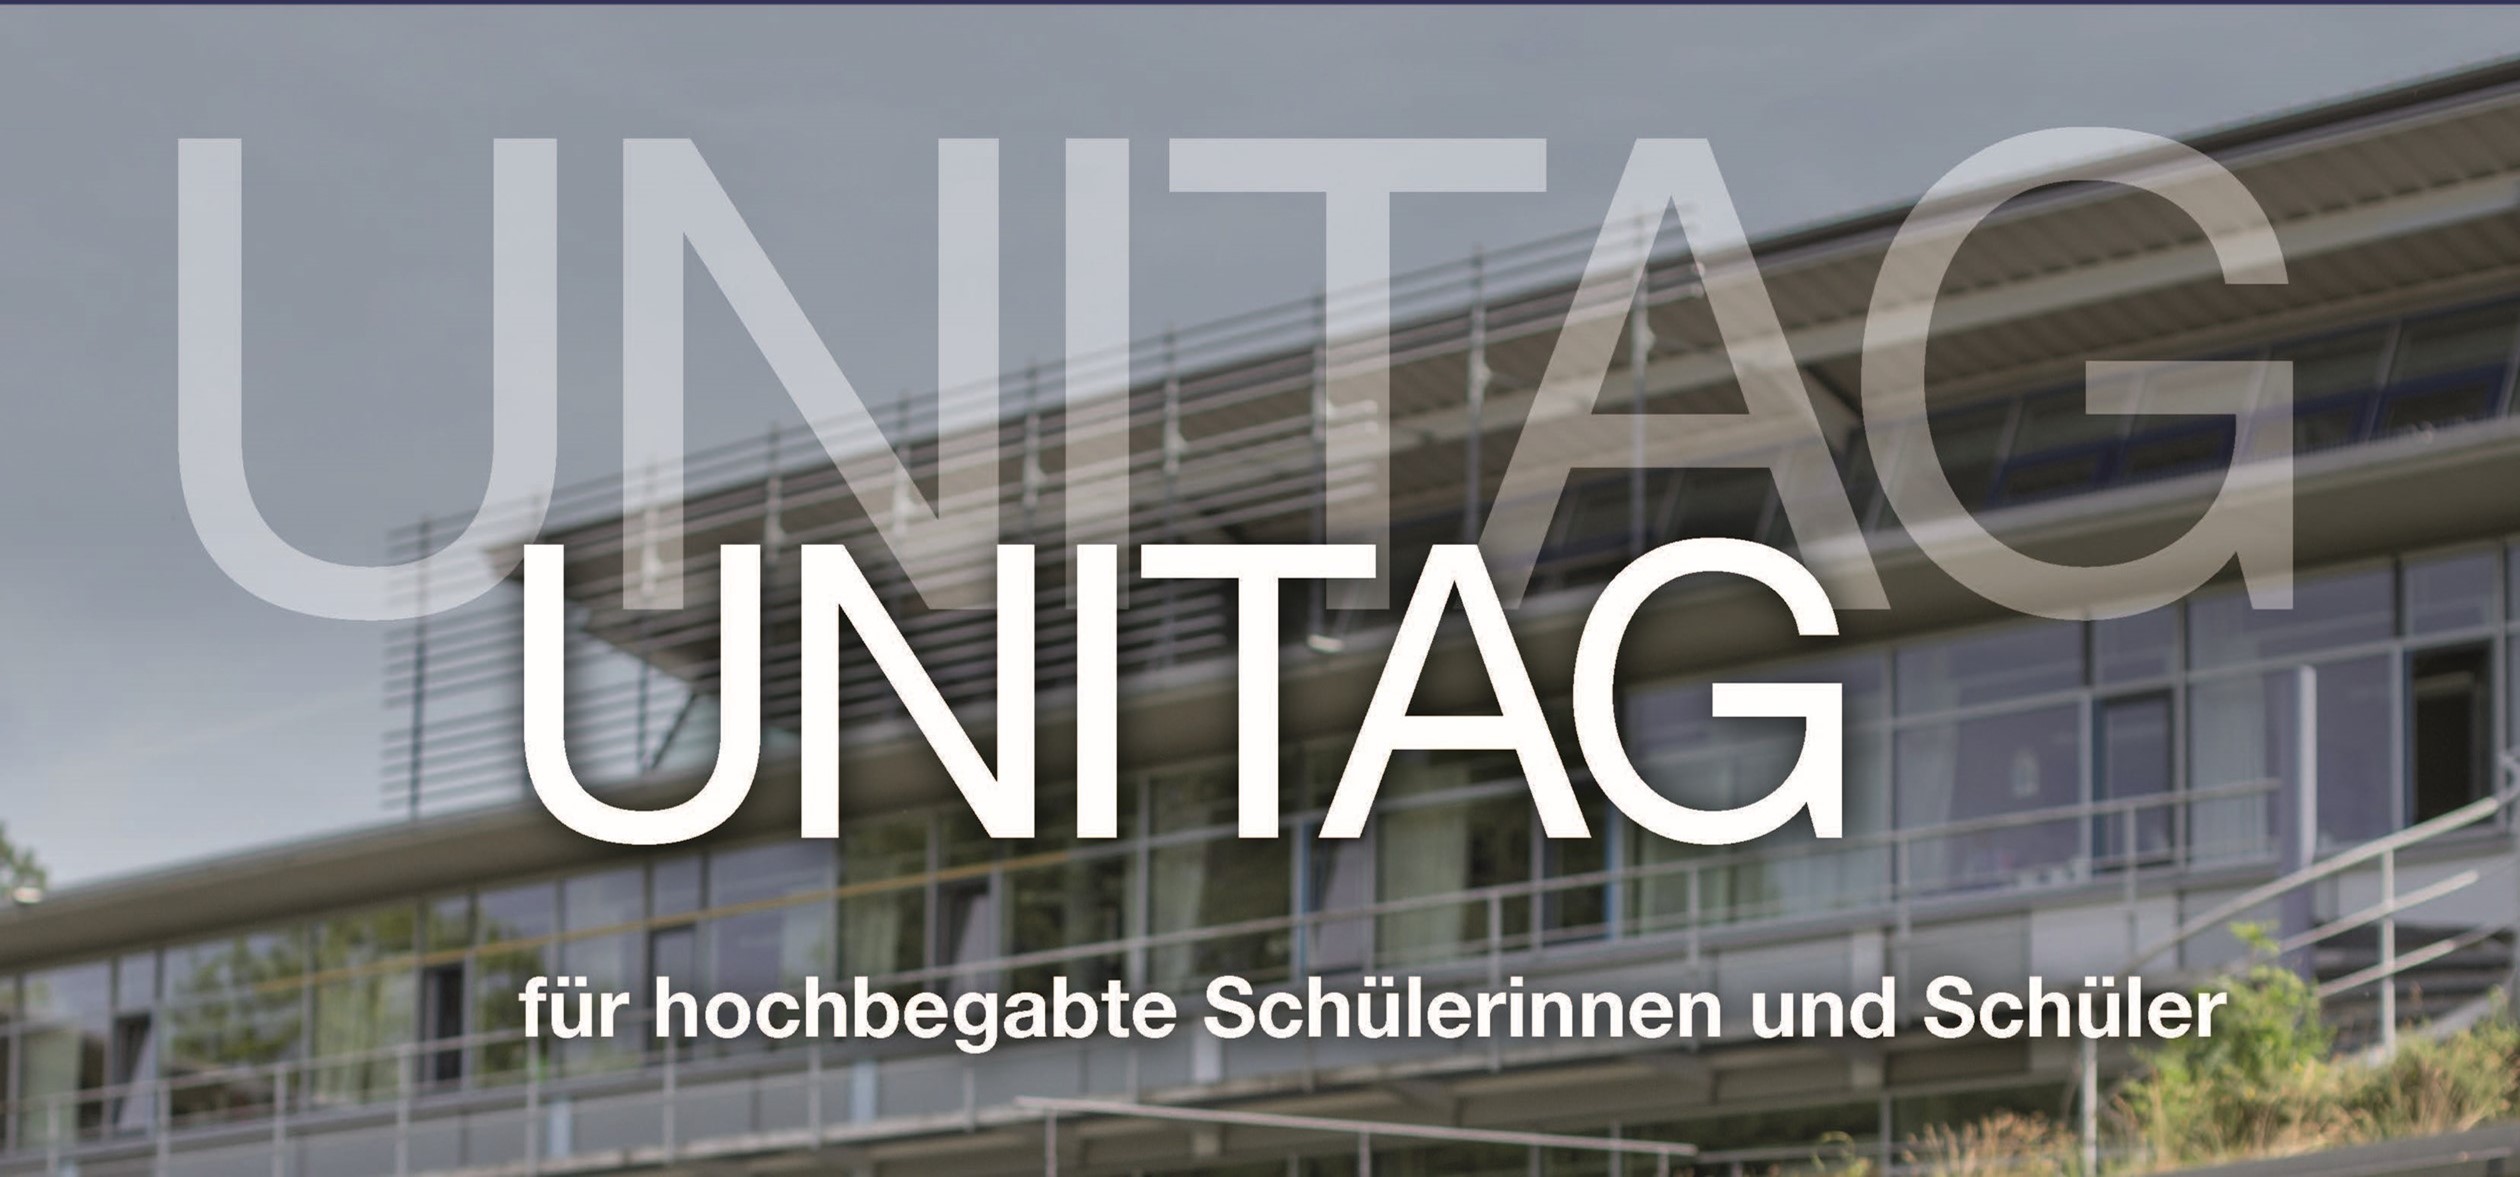 Programm_Unitag